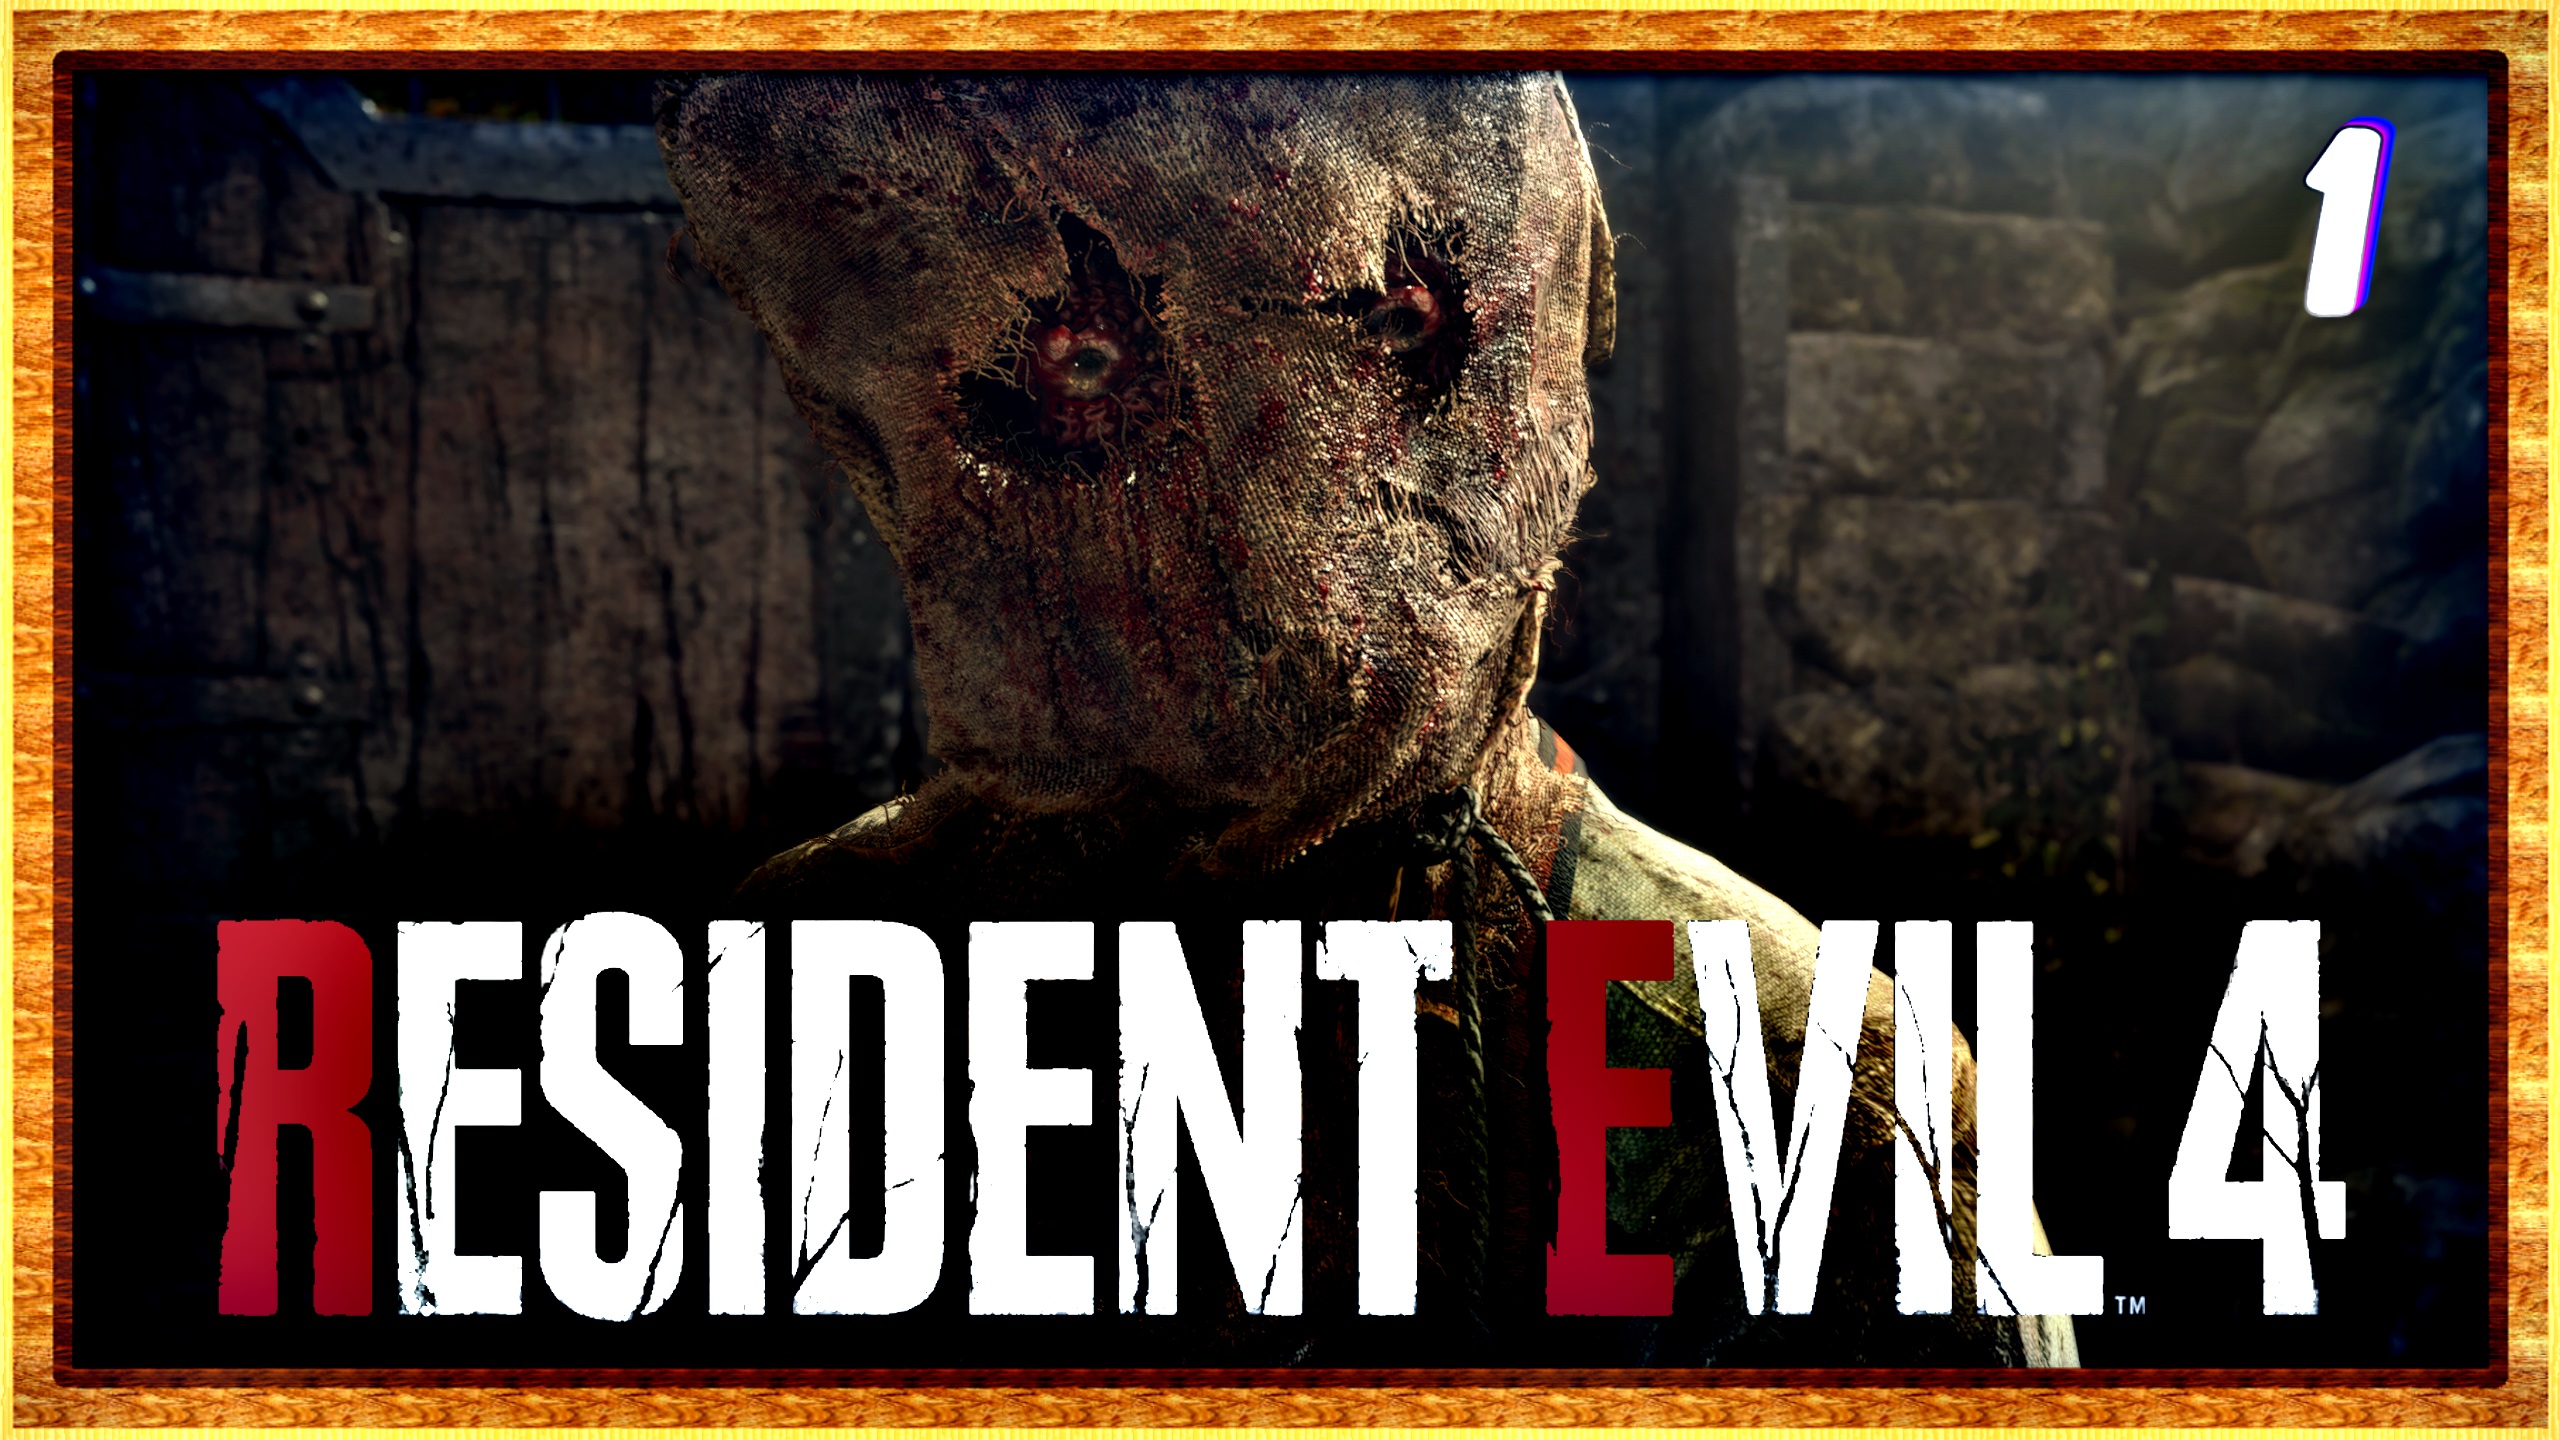 Обитель зла 4 начало | Resident evil 4 remake прохождение #1